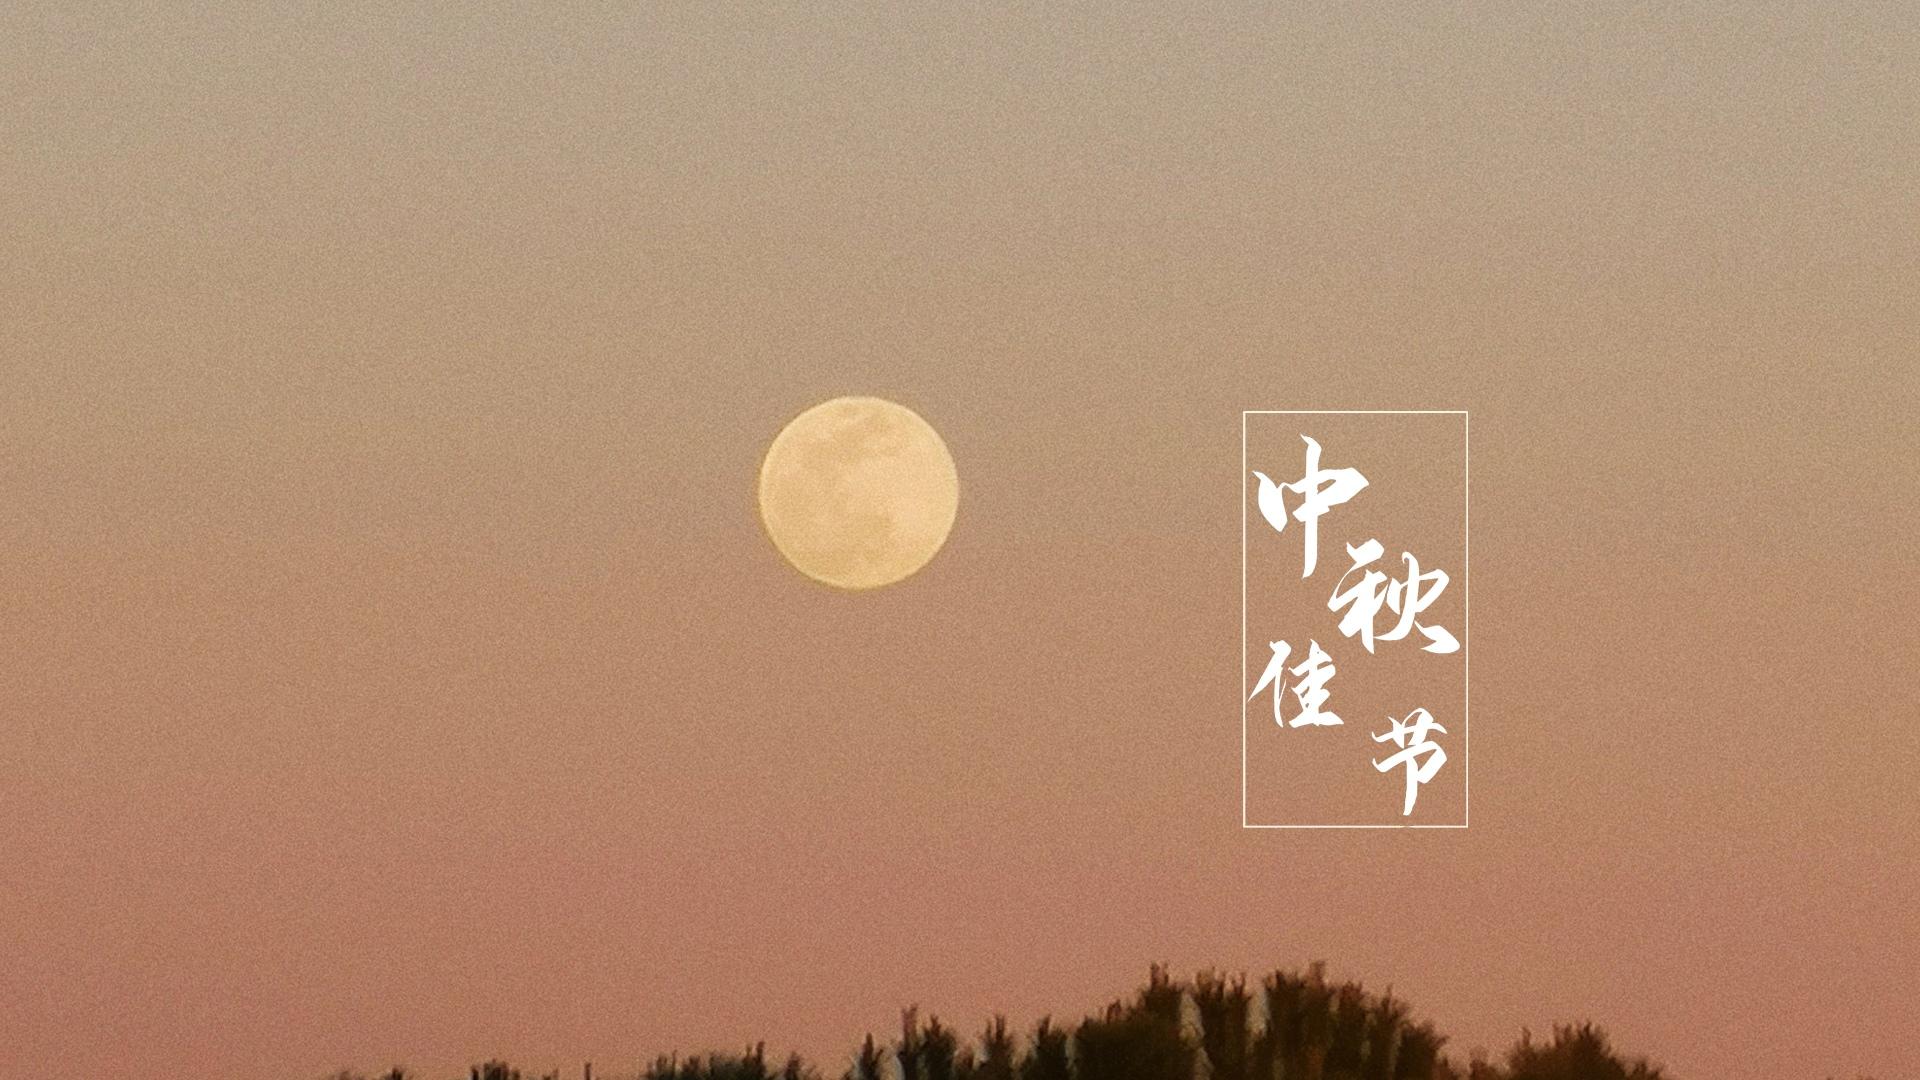 中秋佳节唯美月光图片桌面壁纸